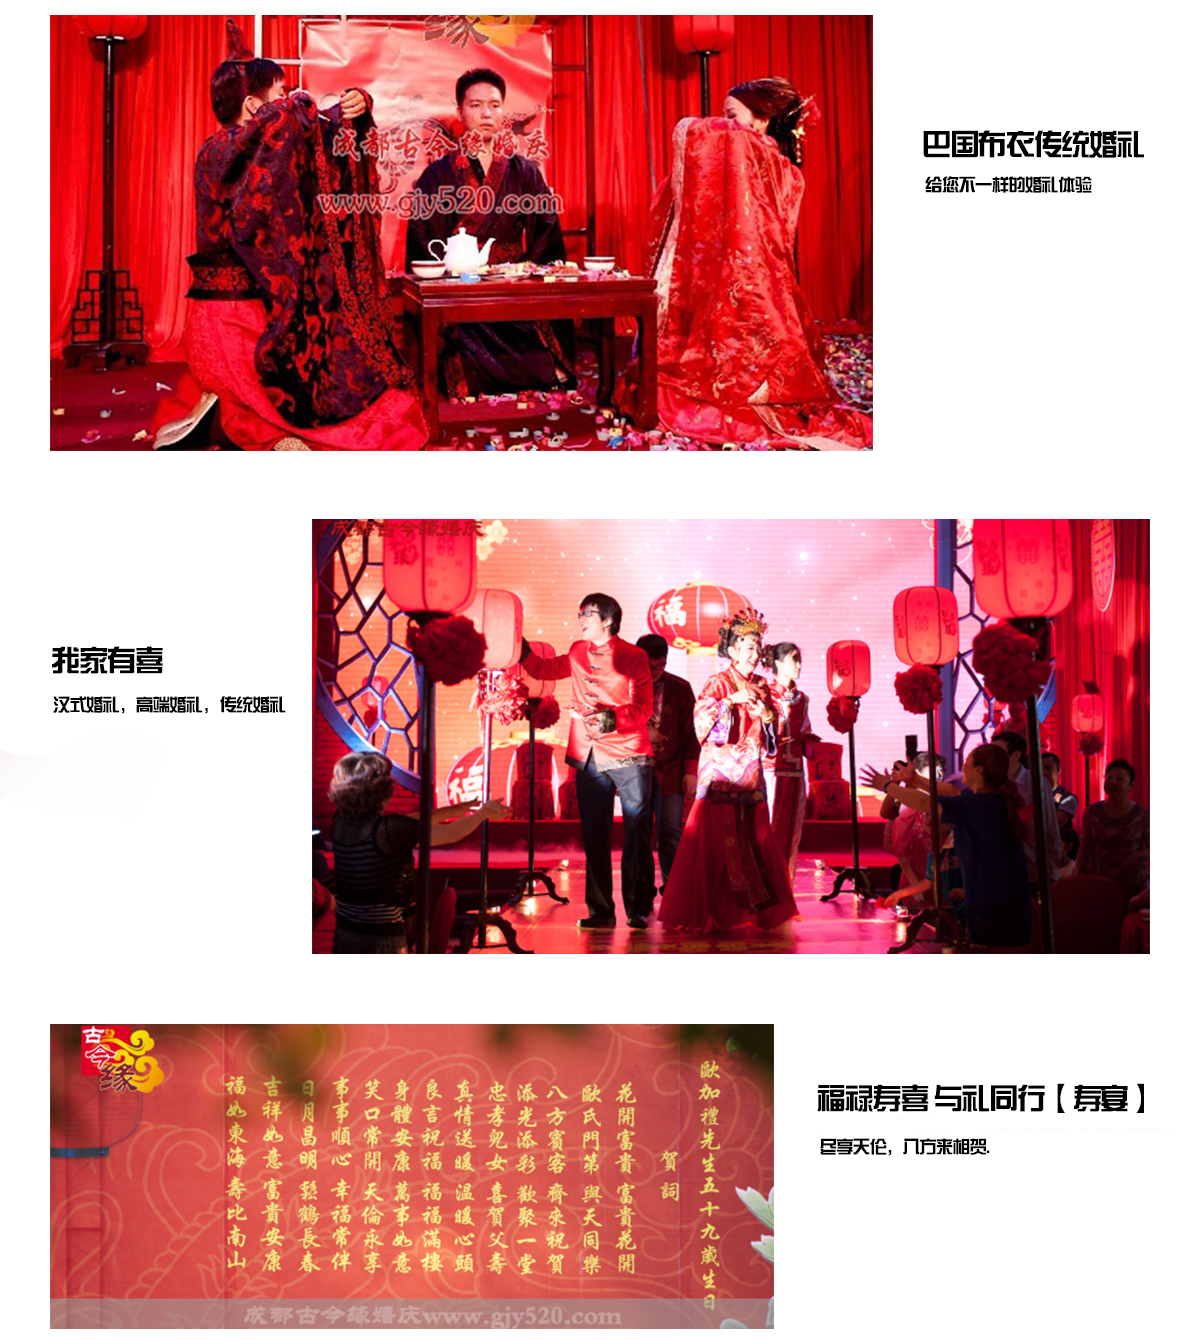 贵阳中式婚庆公司介绍中式婚礼在现在这个时代还土吗